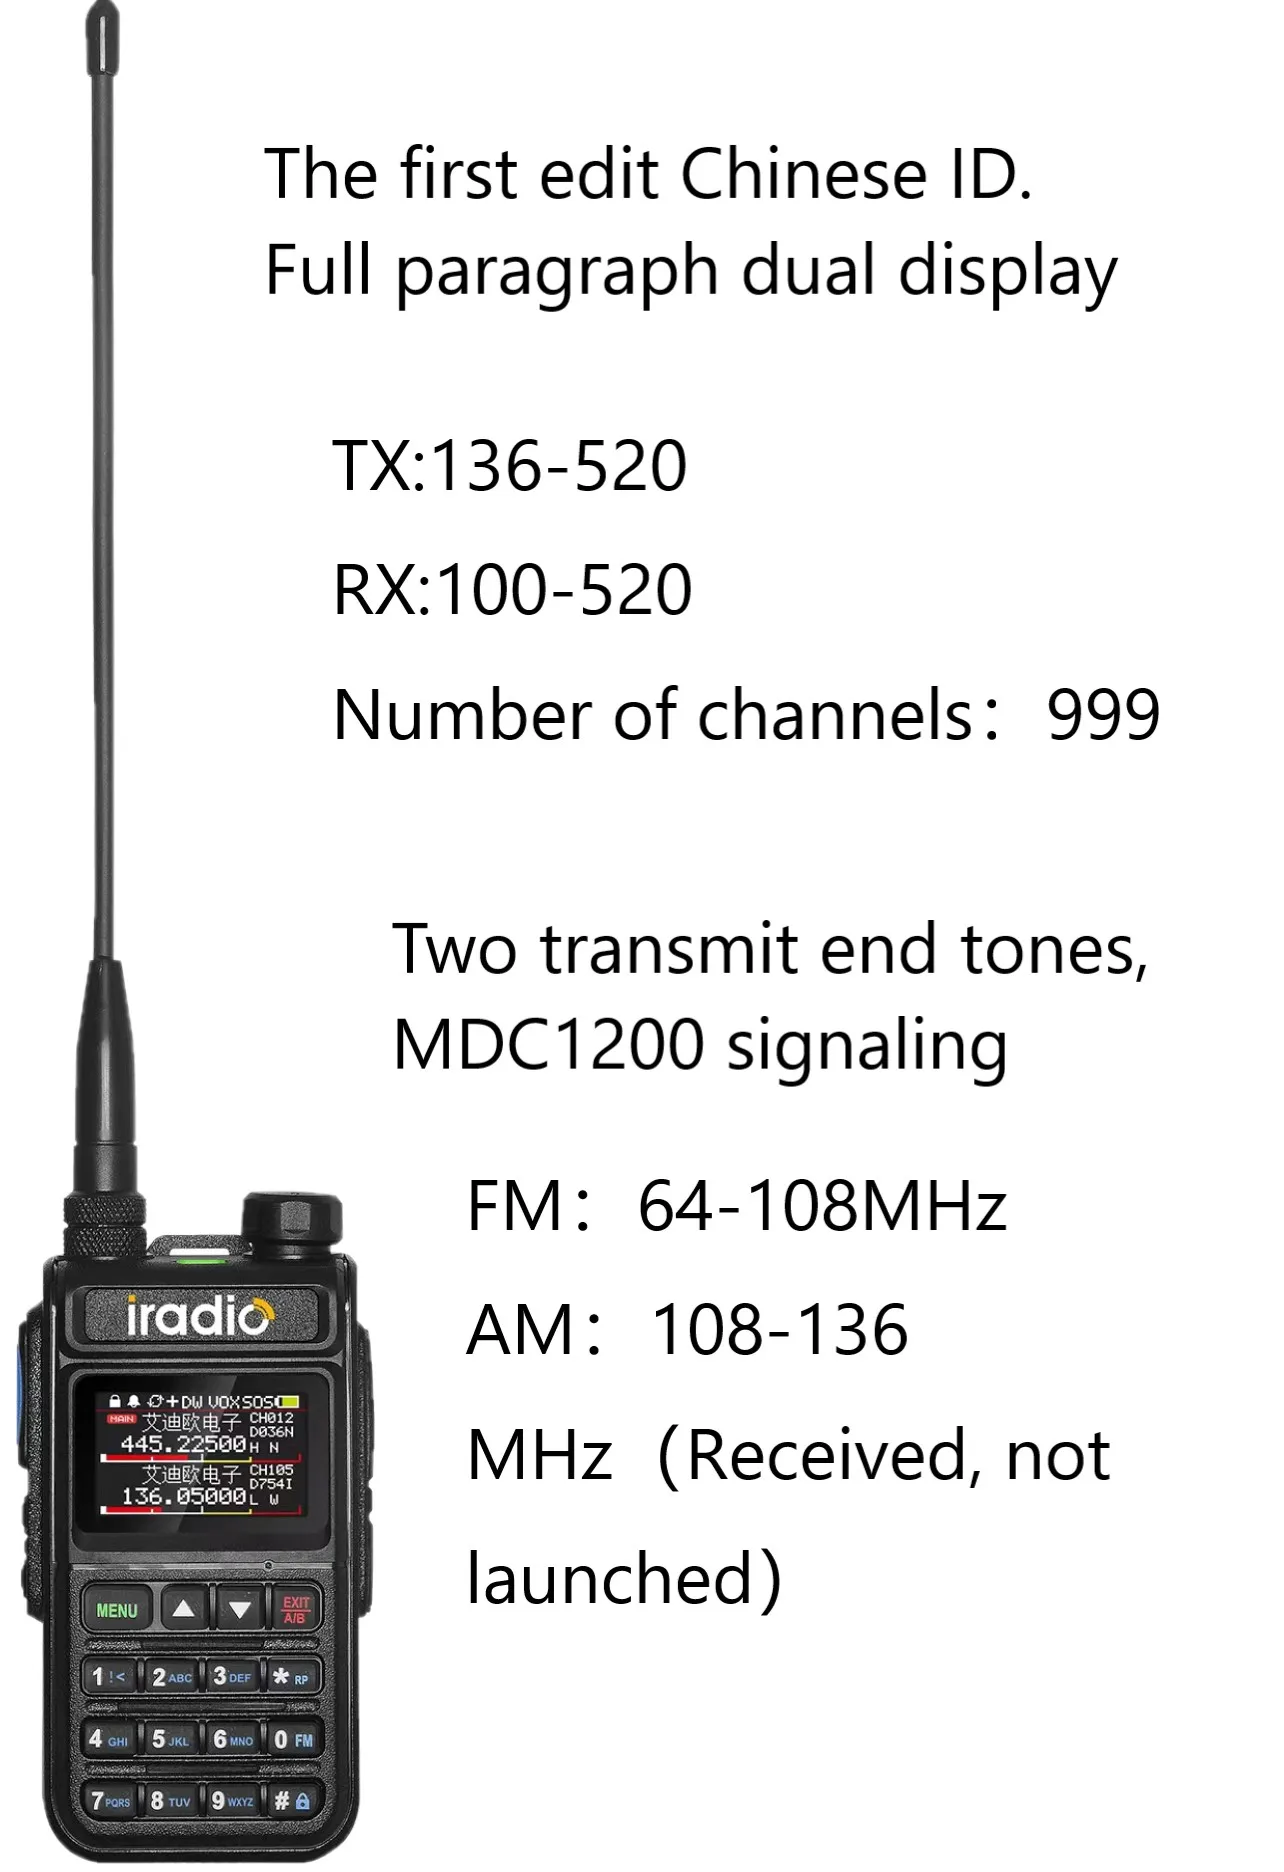 walkie-talkie-de-alta-potencia-actualizacion-de-la-radio-de-la-radio-de-la-banda-cuadruple-de-la-banda-cuadruple-de-la-funcion-de-la-radio-de-la-funcion-de-alta-potencia-de-alta-calidad-de-alta-calidad-de-alta-potencia-de-alta-calidad-de-alta-calidad